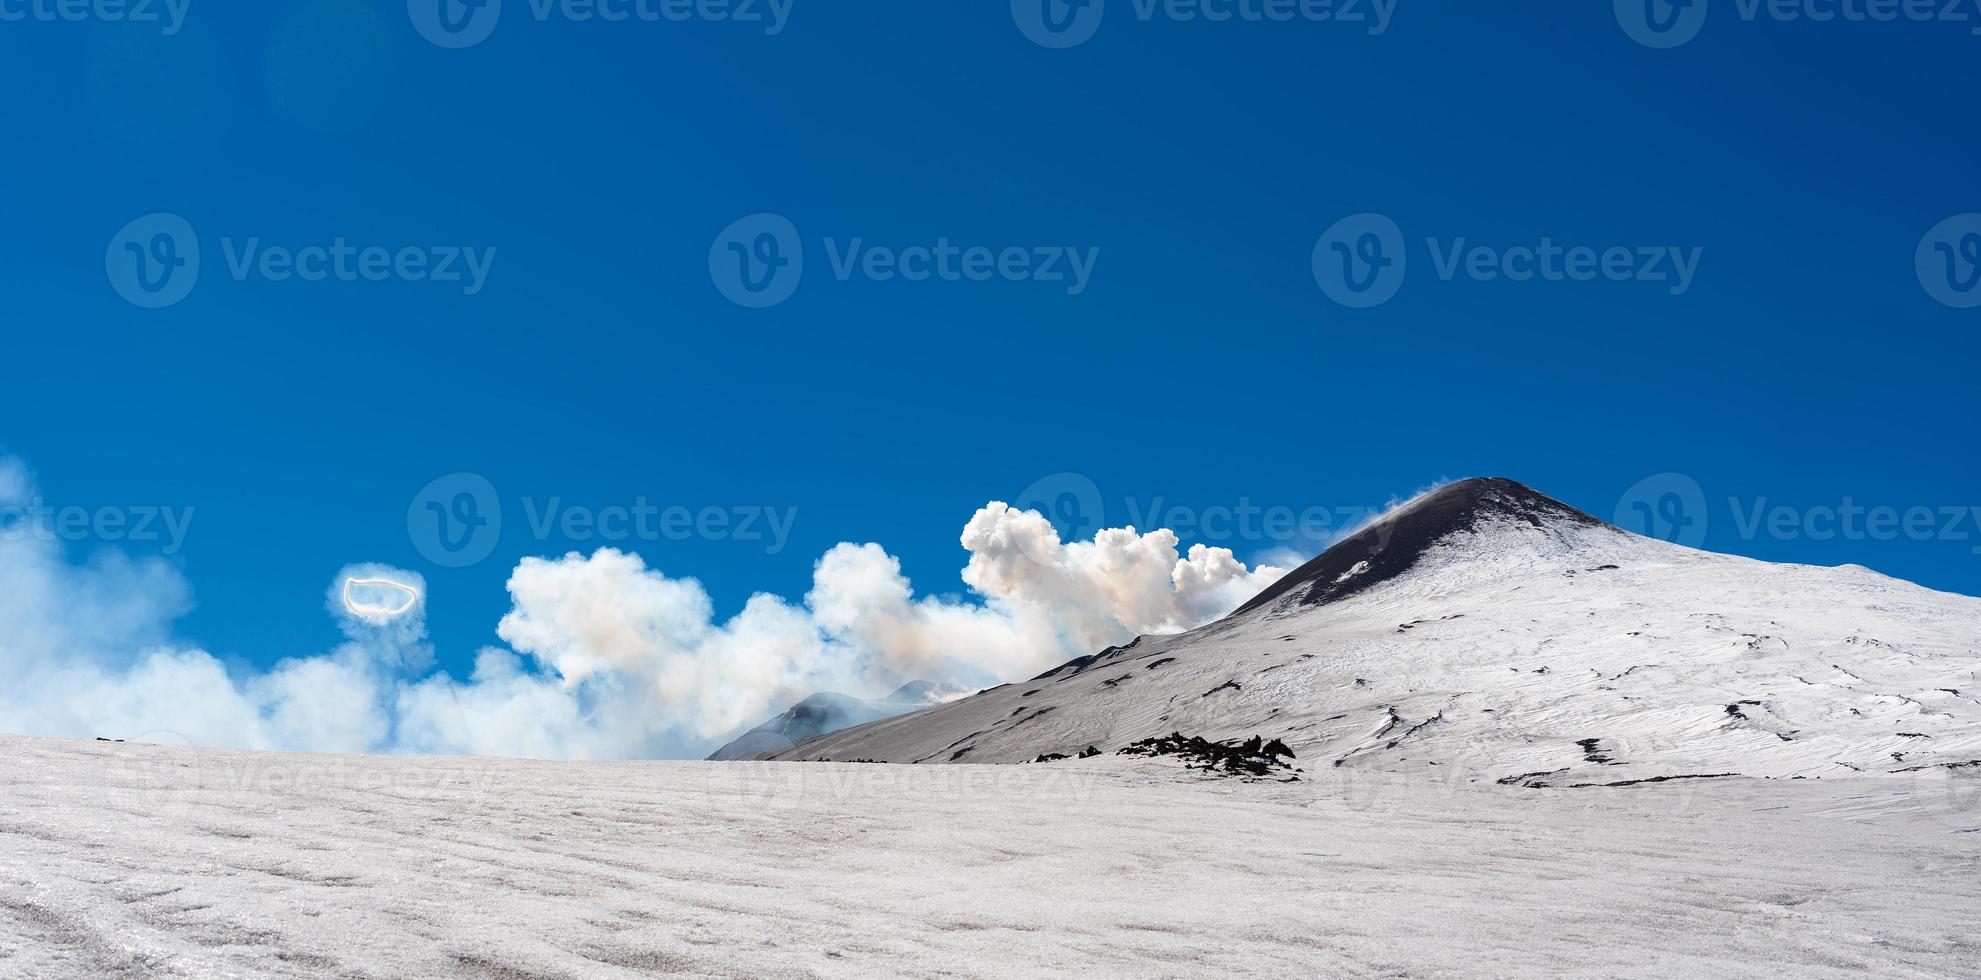 topkrater van etna-vulkaan met ringrook spectaculair fenomeen van stoomtepelhof tijdens de uitbarsting foto